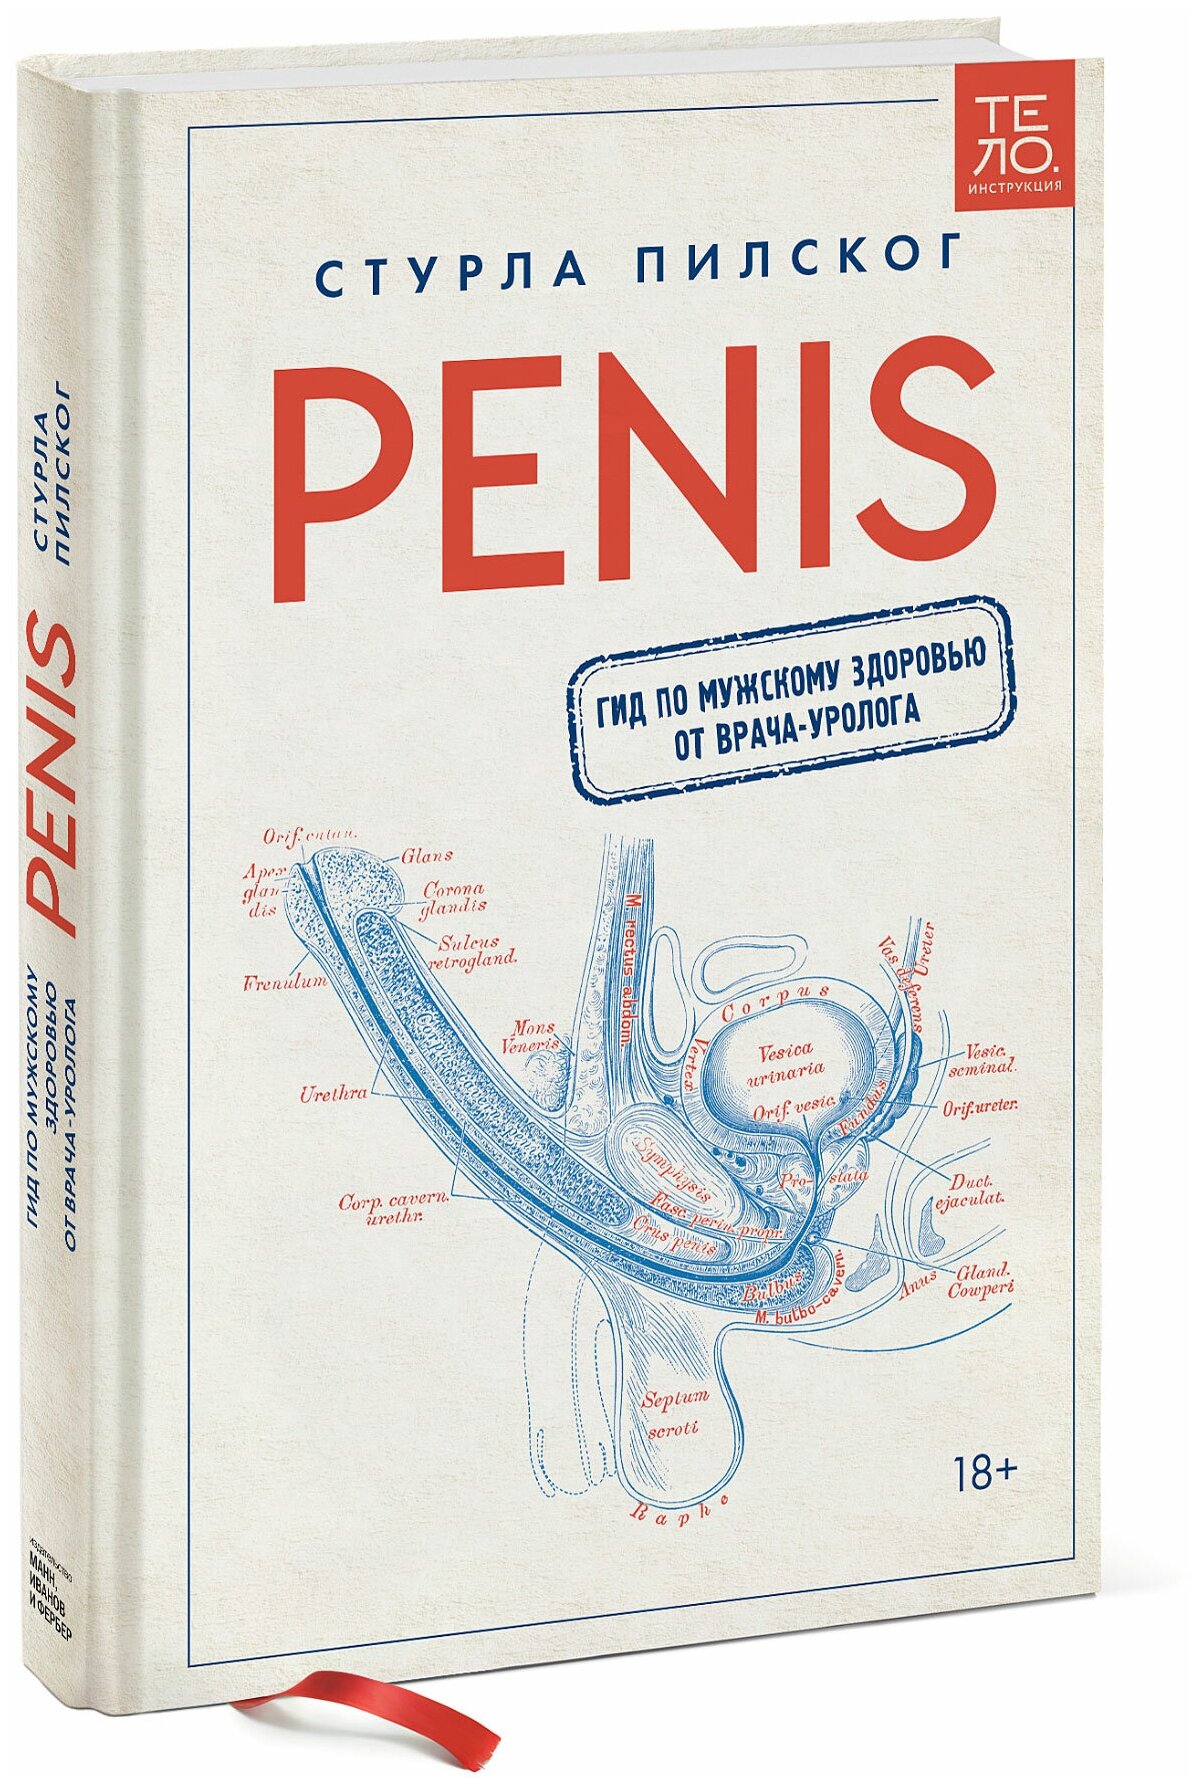 Penis (Стурла Пилског) - фото №1